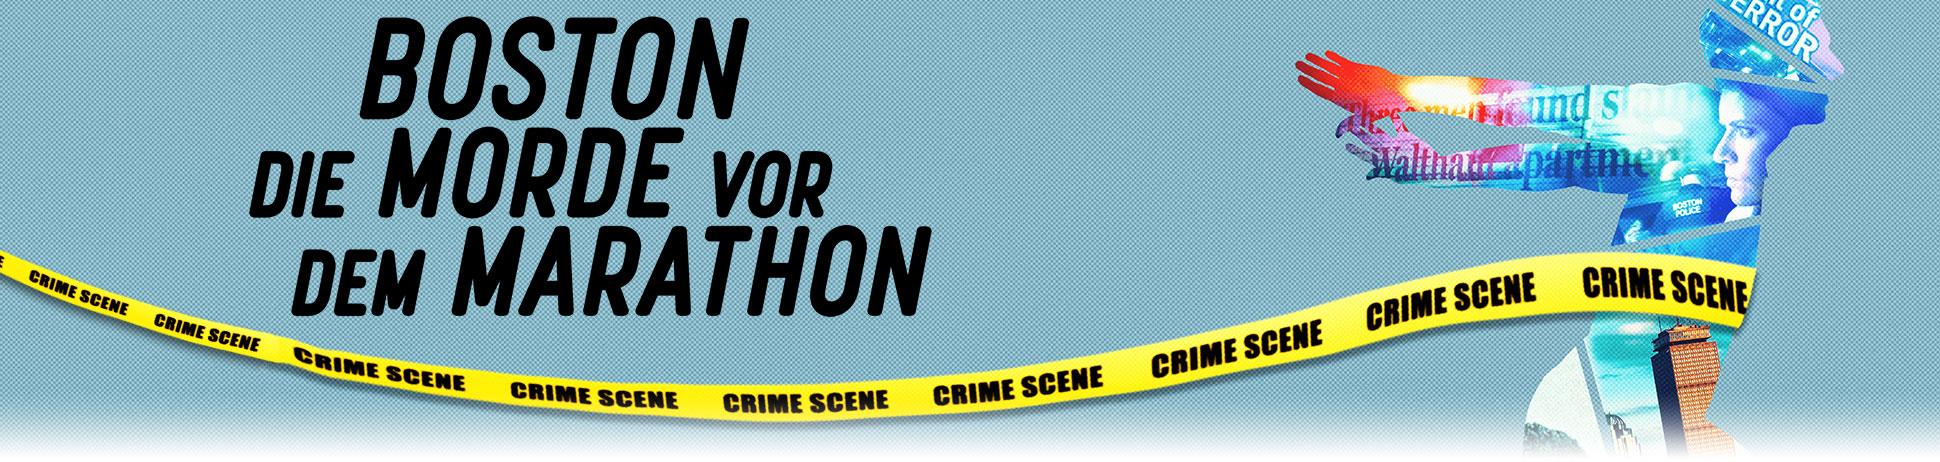 Boston - Die Morde vor dem Marathon